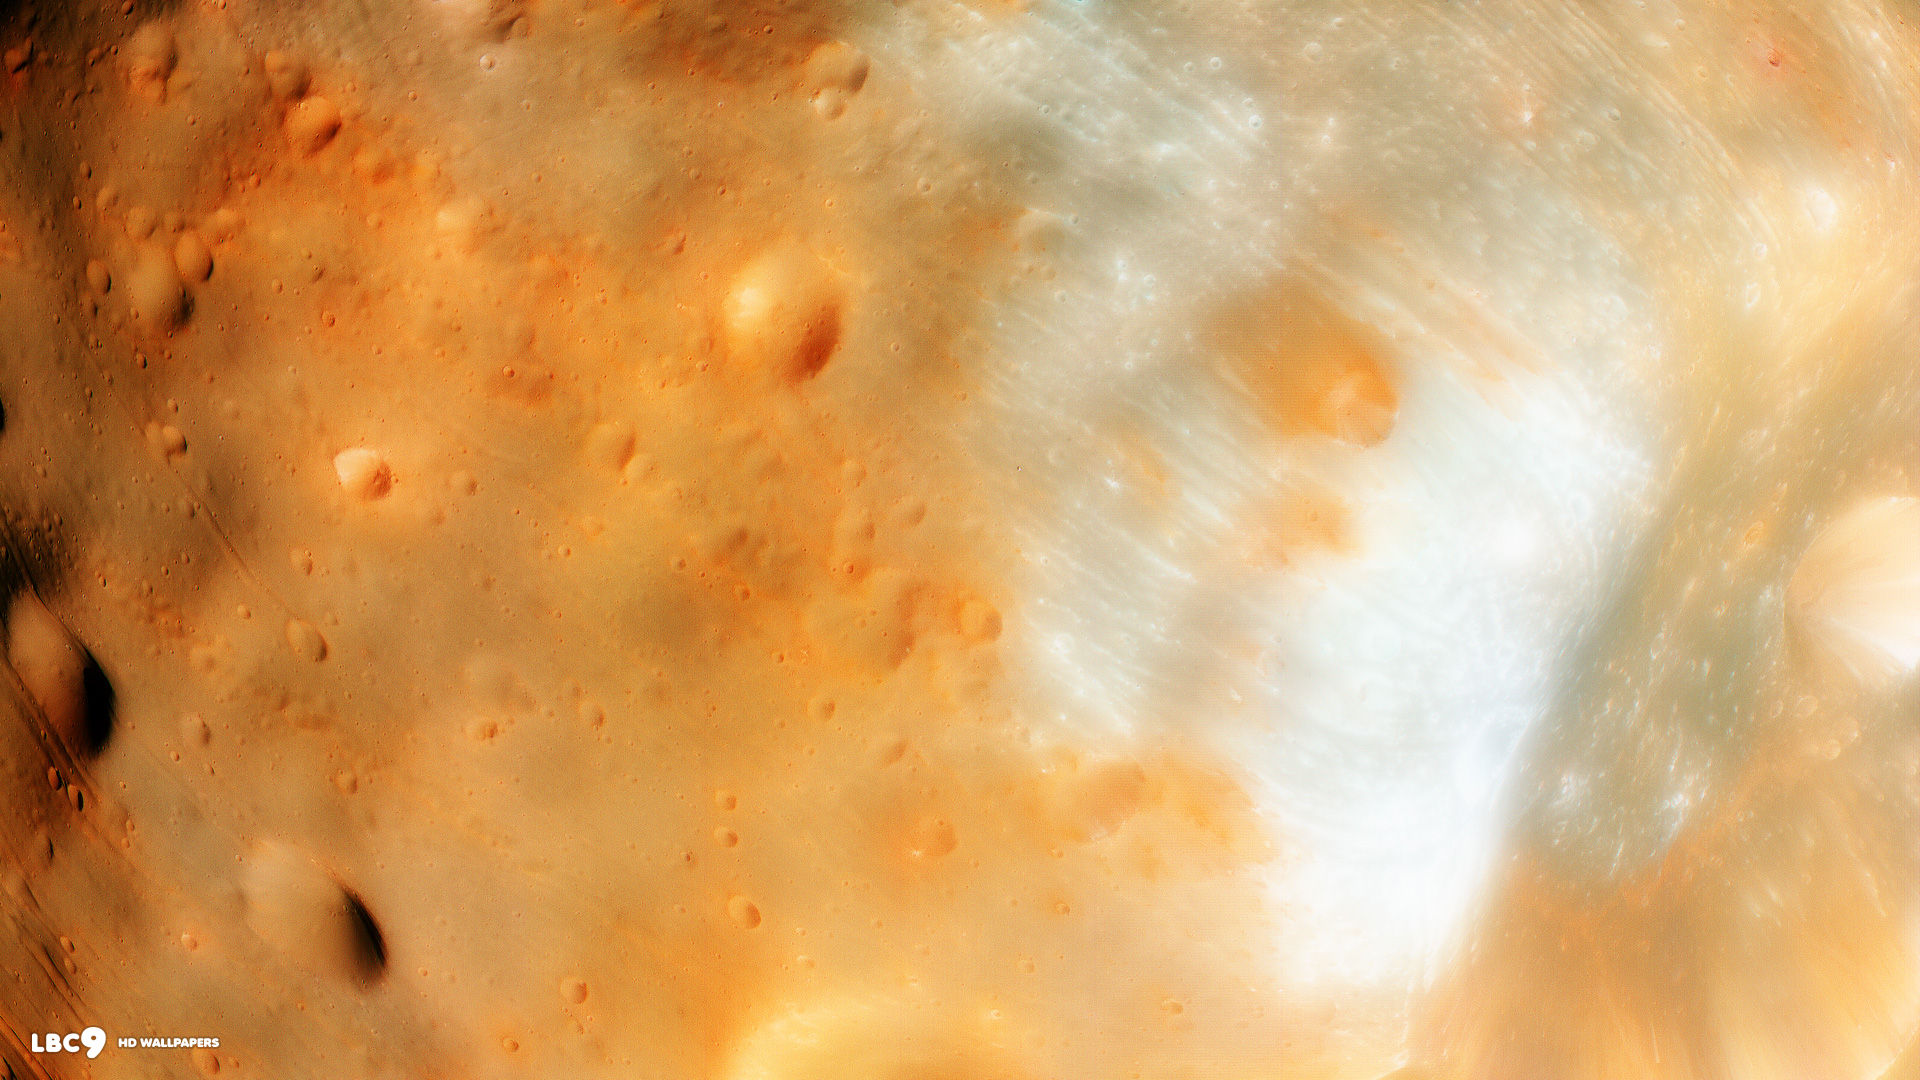 martian moon phobos surface